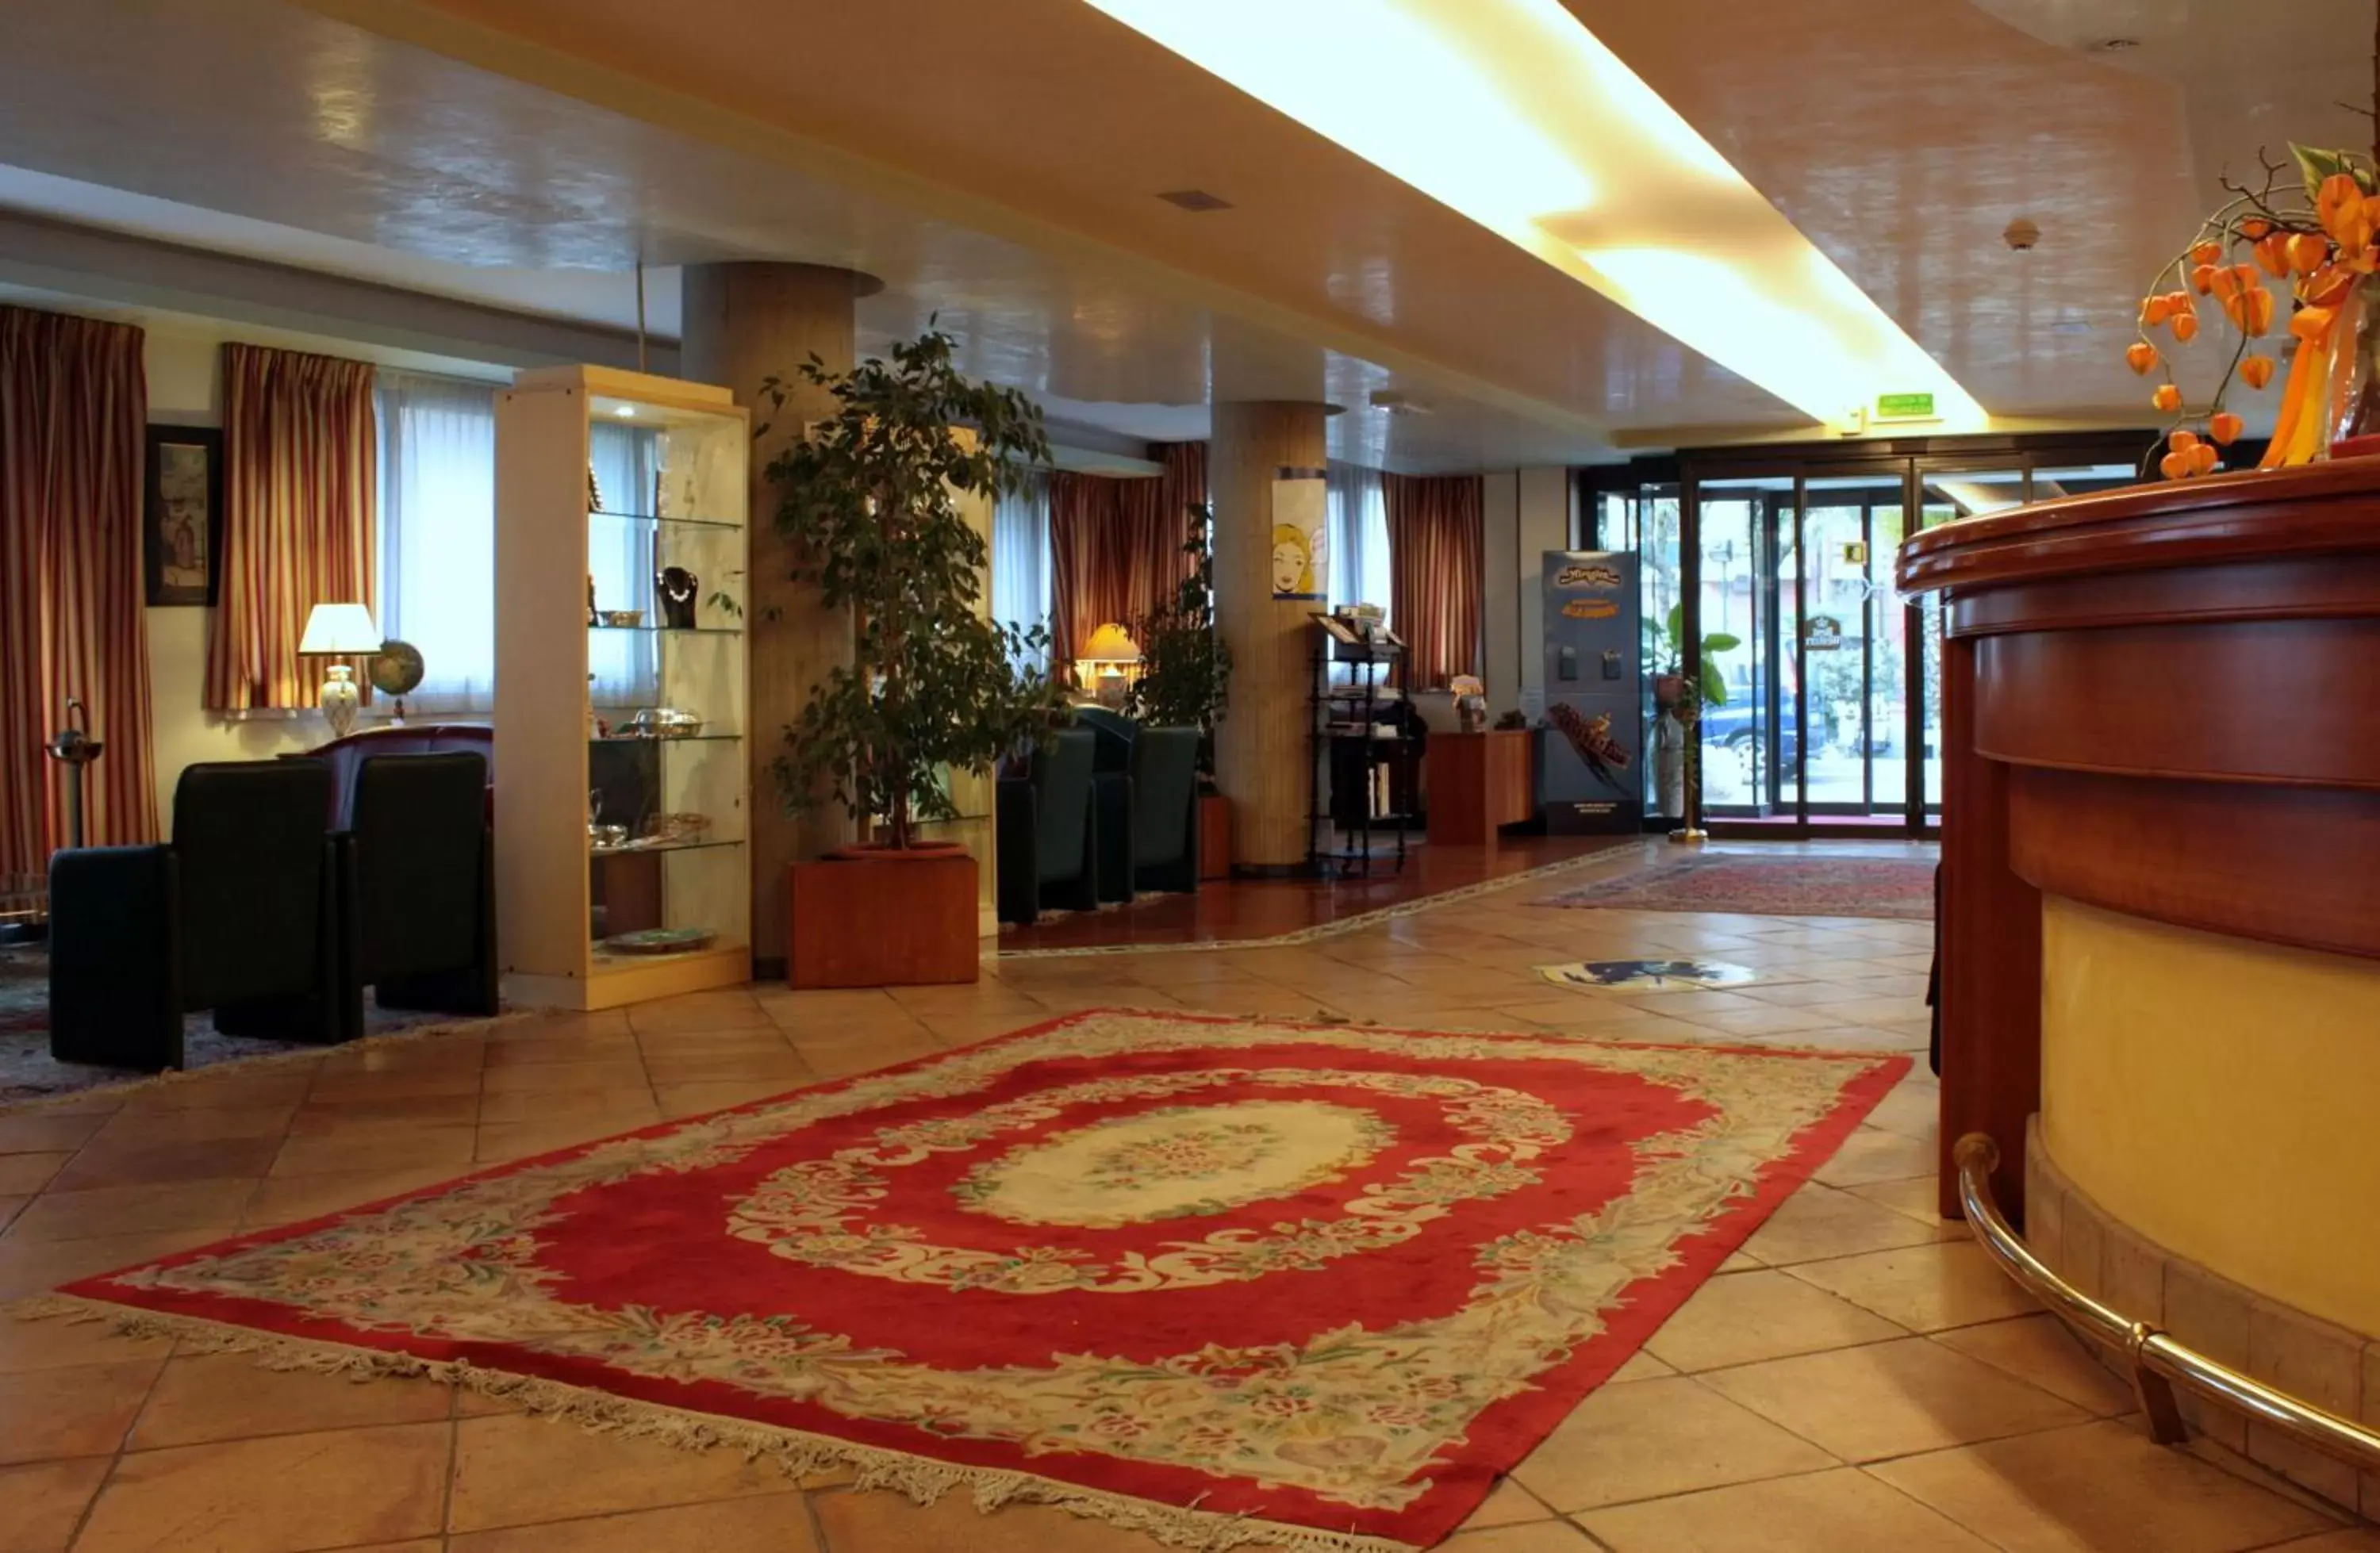 Lobby or reception, Lobby/Reception in Best Western Hotel Dei Cavalieri